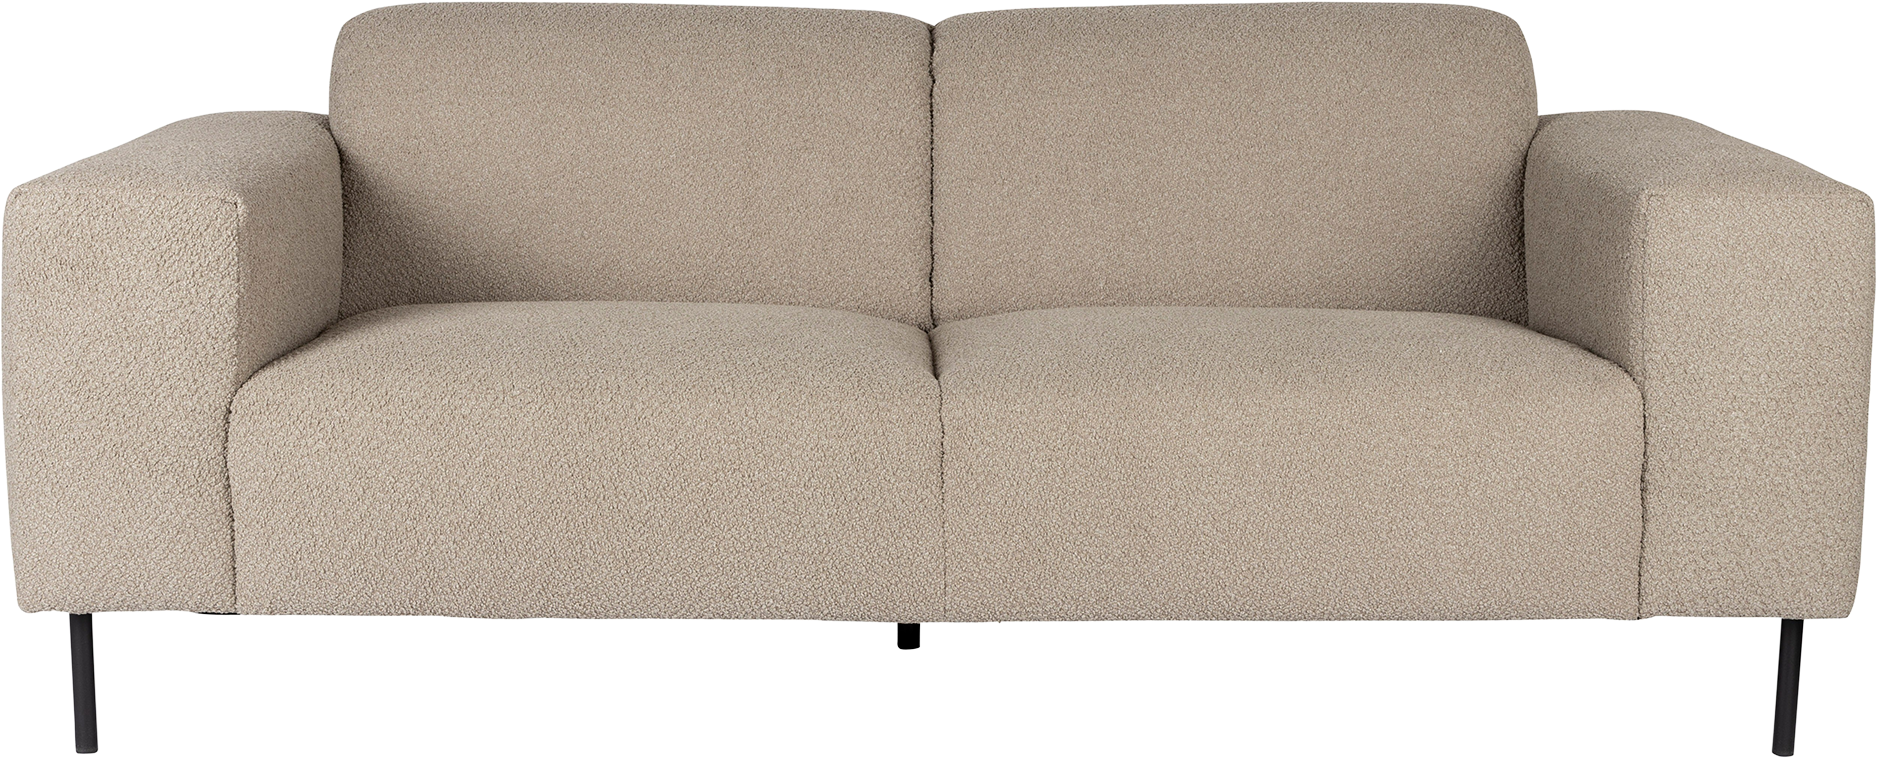 Sofa Sylvia 2.5 Sitzer in Sand präsentiert im Onlineshop von KAQTU Design AG. 2er Sofa ist von White Label Living